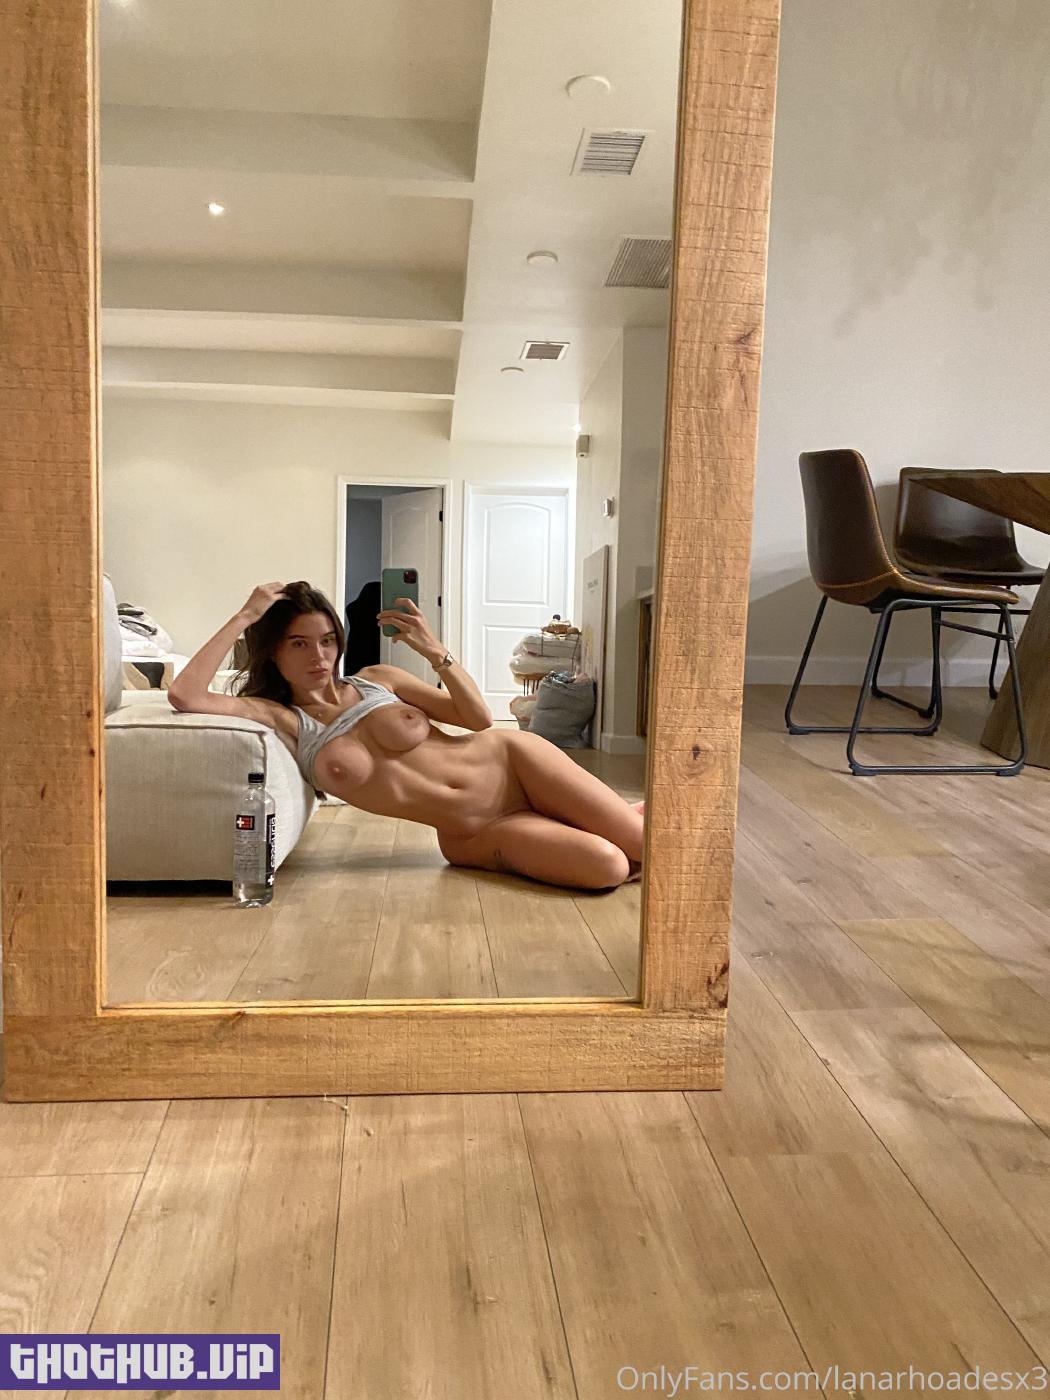 1662649611 29 Lana Rhoades Nude Mirror Selfies Onlyfans Set Leaked